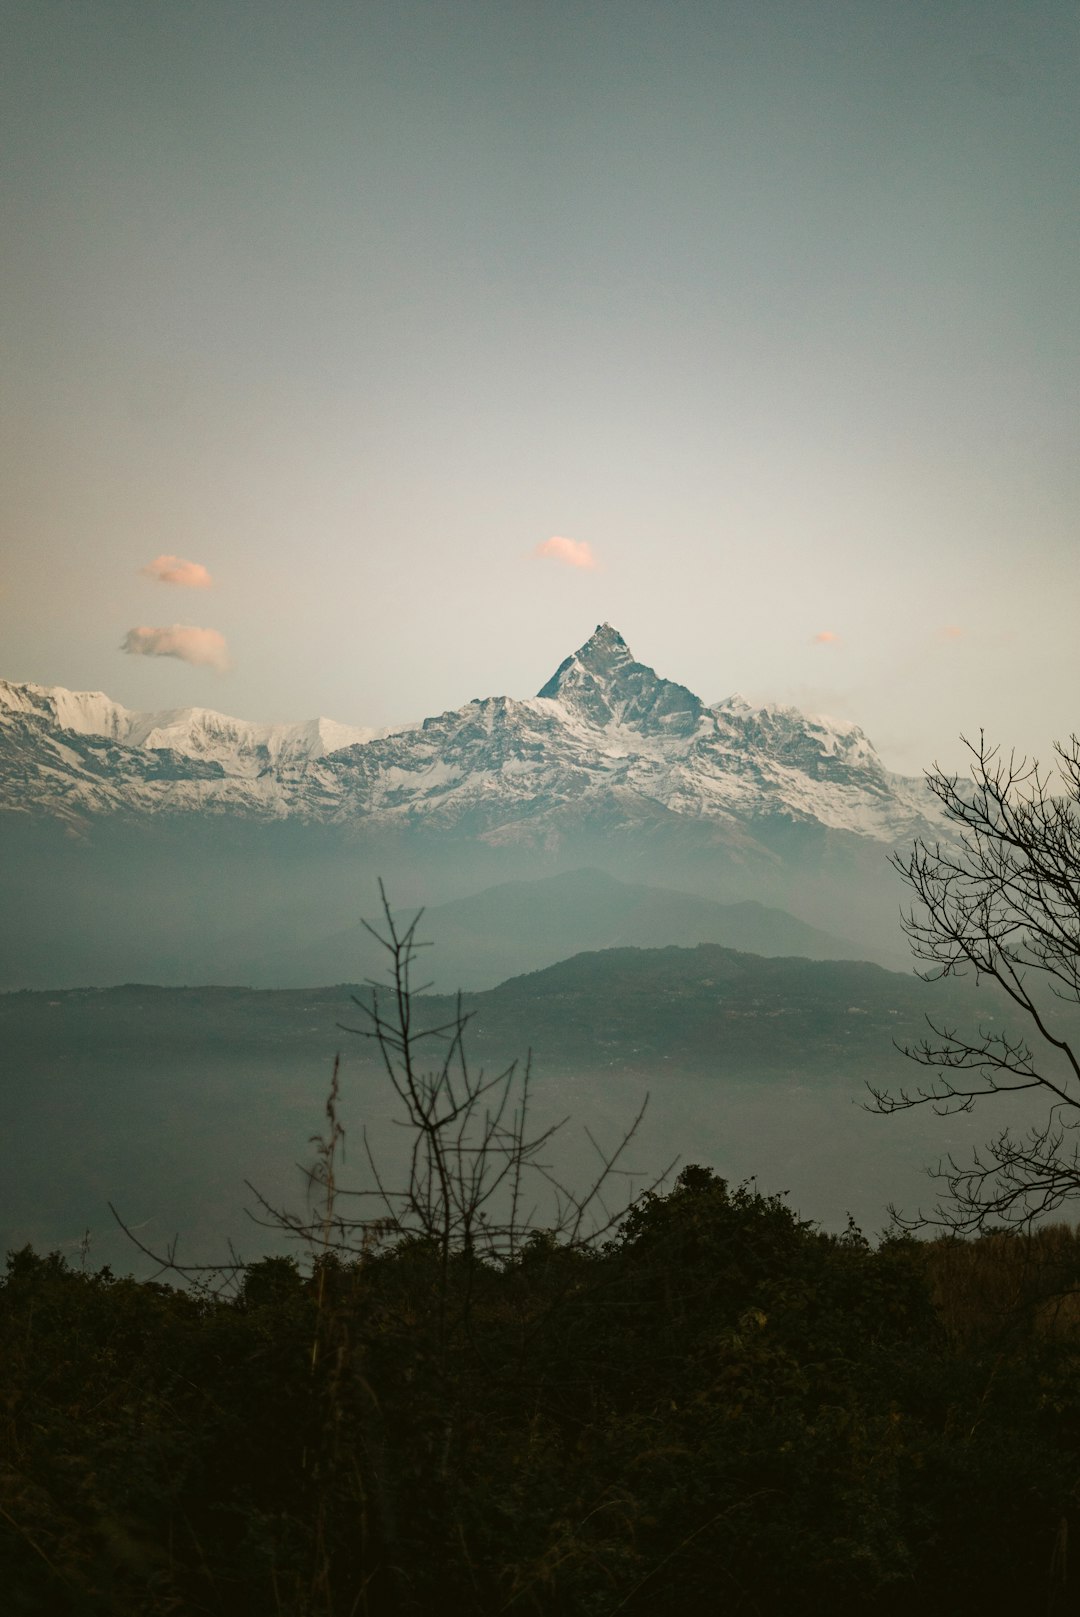 Mountain range photo spot Pumdi Bhumdi Ghandruk